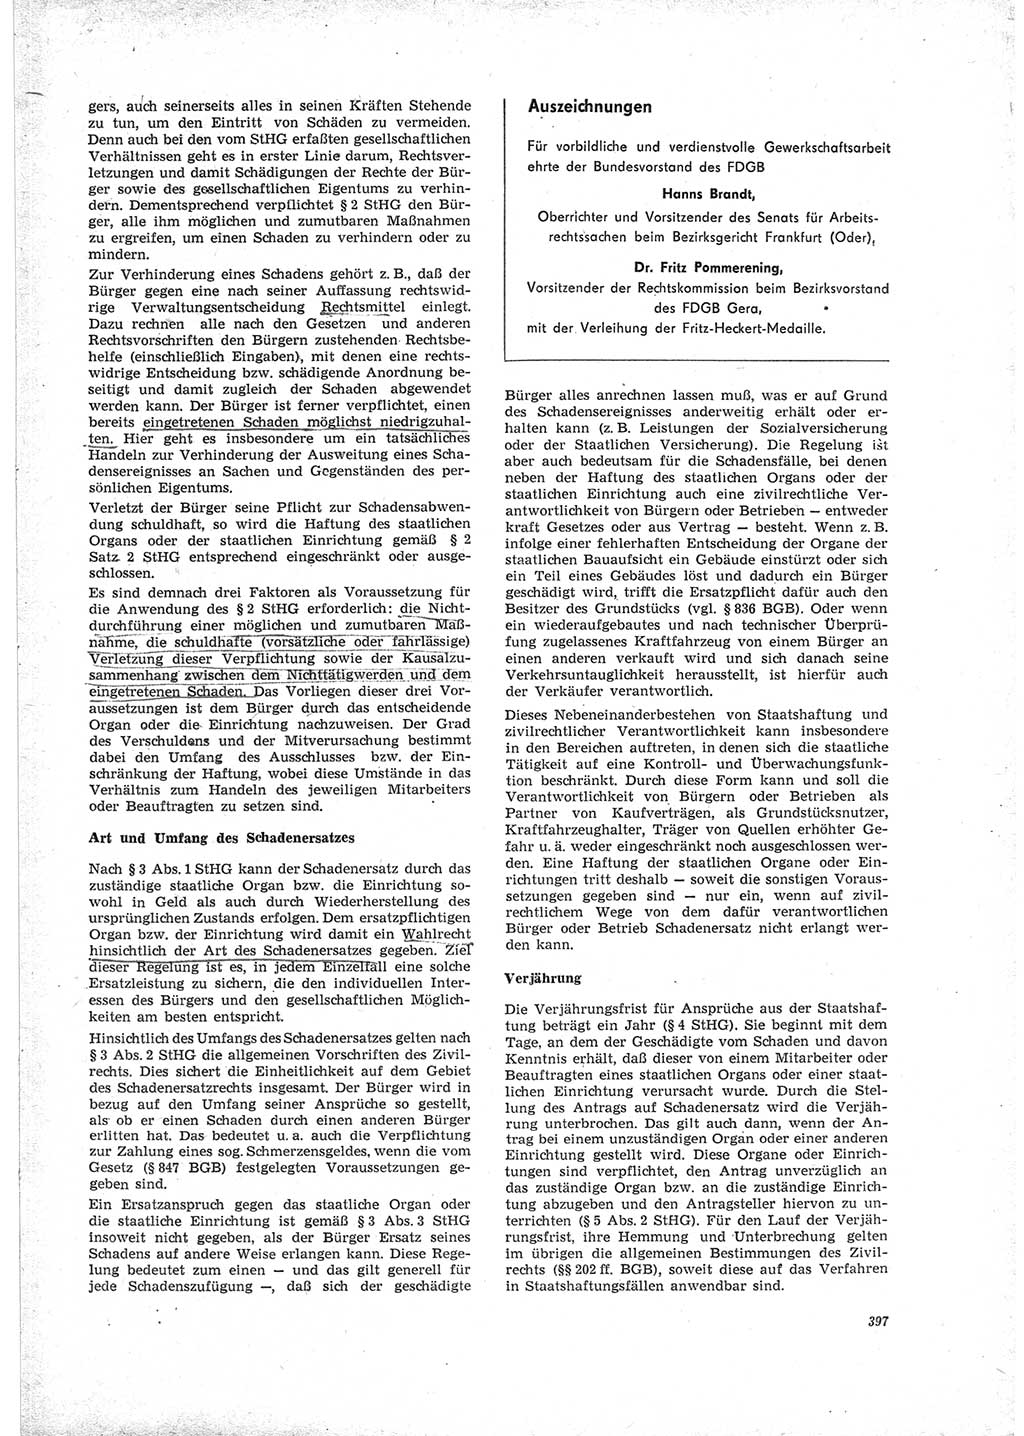 Neue Justiz (NJ), Zeitschrift für Recht und Rechtswissenschaft [Deutsche Demokratische Republik (DDR)], 23. Jahrgang 1969, Seite 397 (NJ DDR 1969, S. 397)